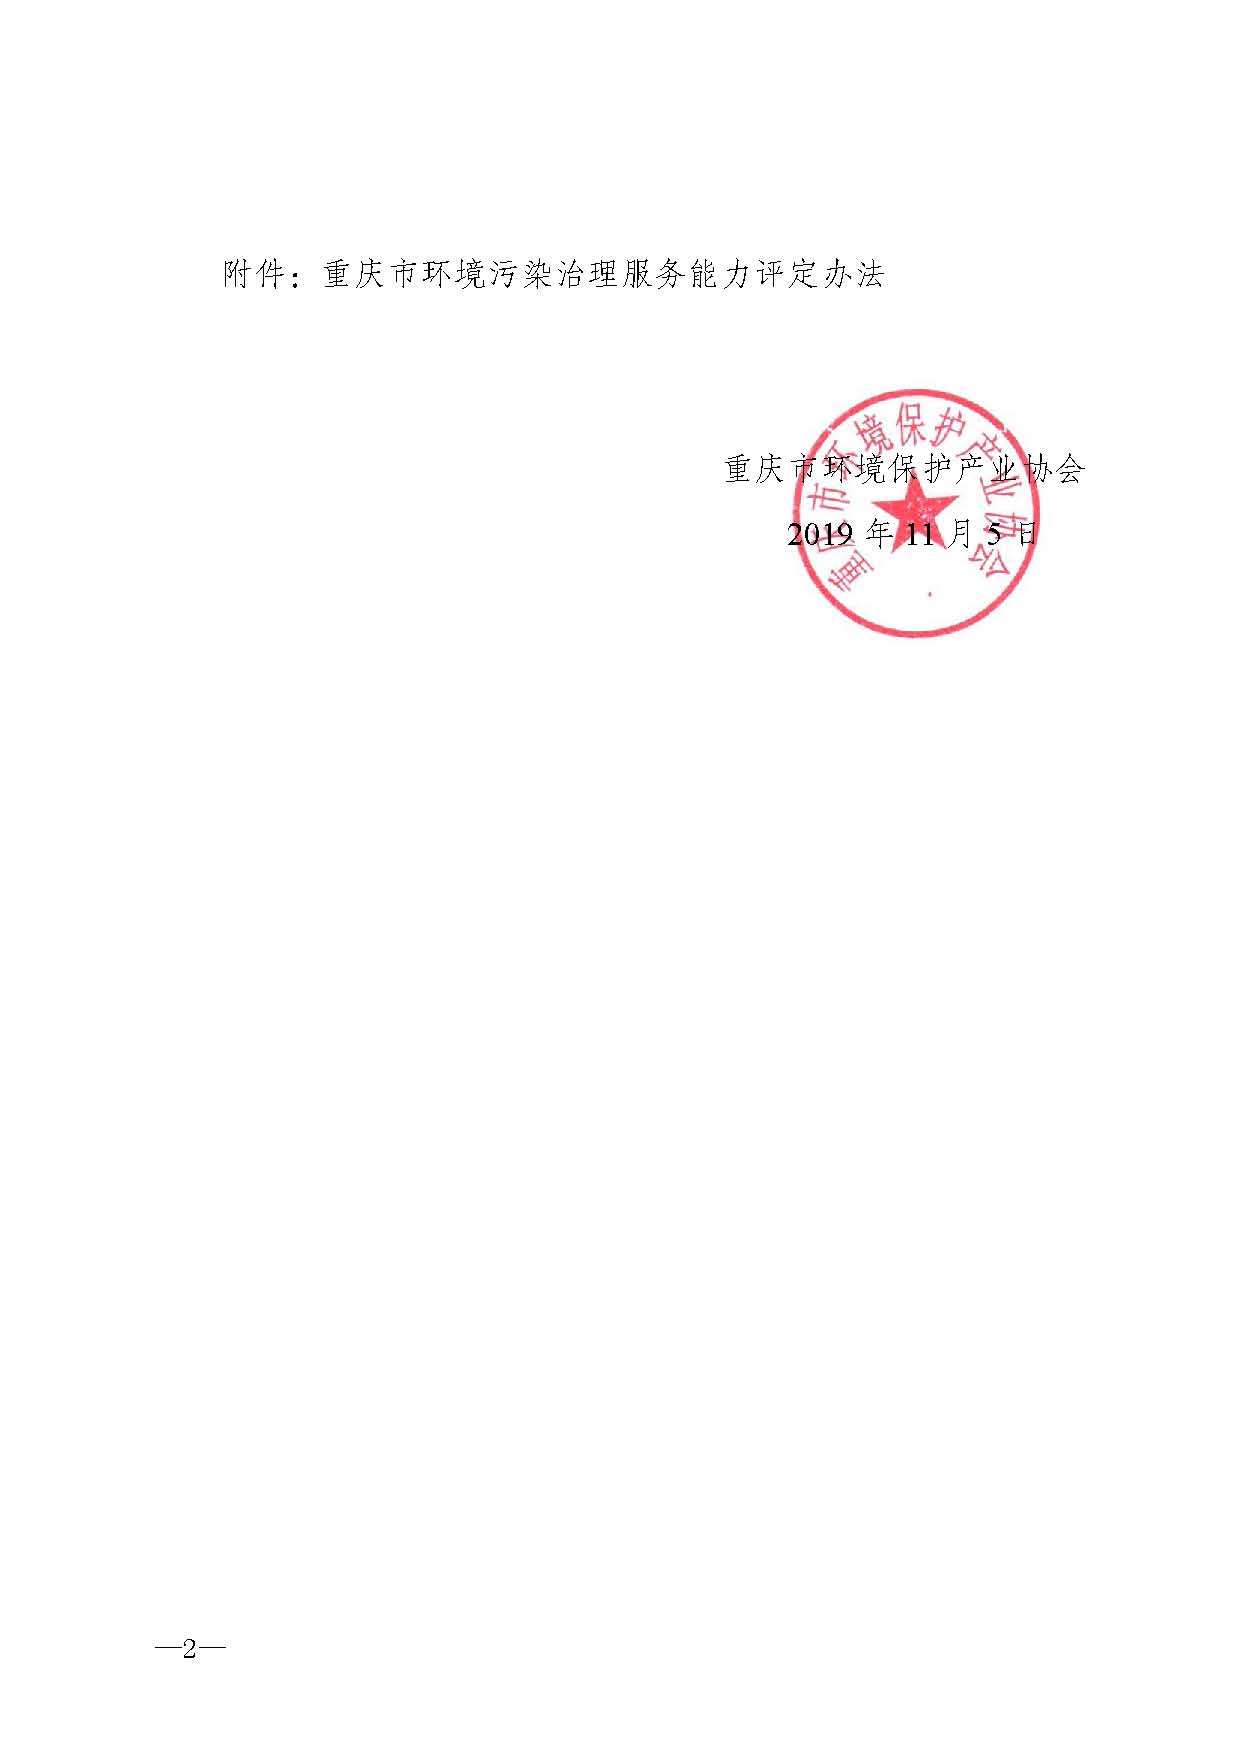 重庆市环境保护产业协会关于修改《重庆市环境污染治理服务能力评定管理办法》的通知-副本_页面_2